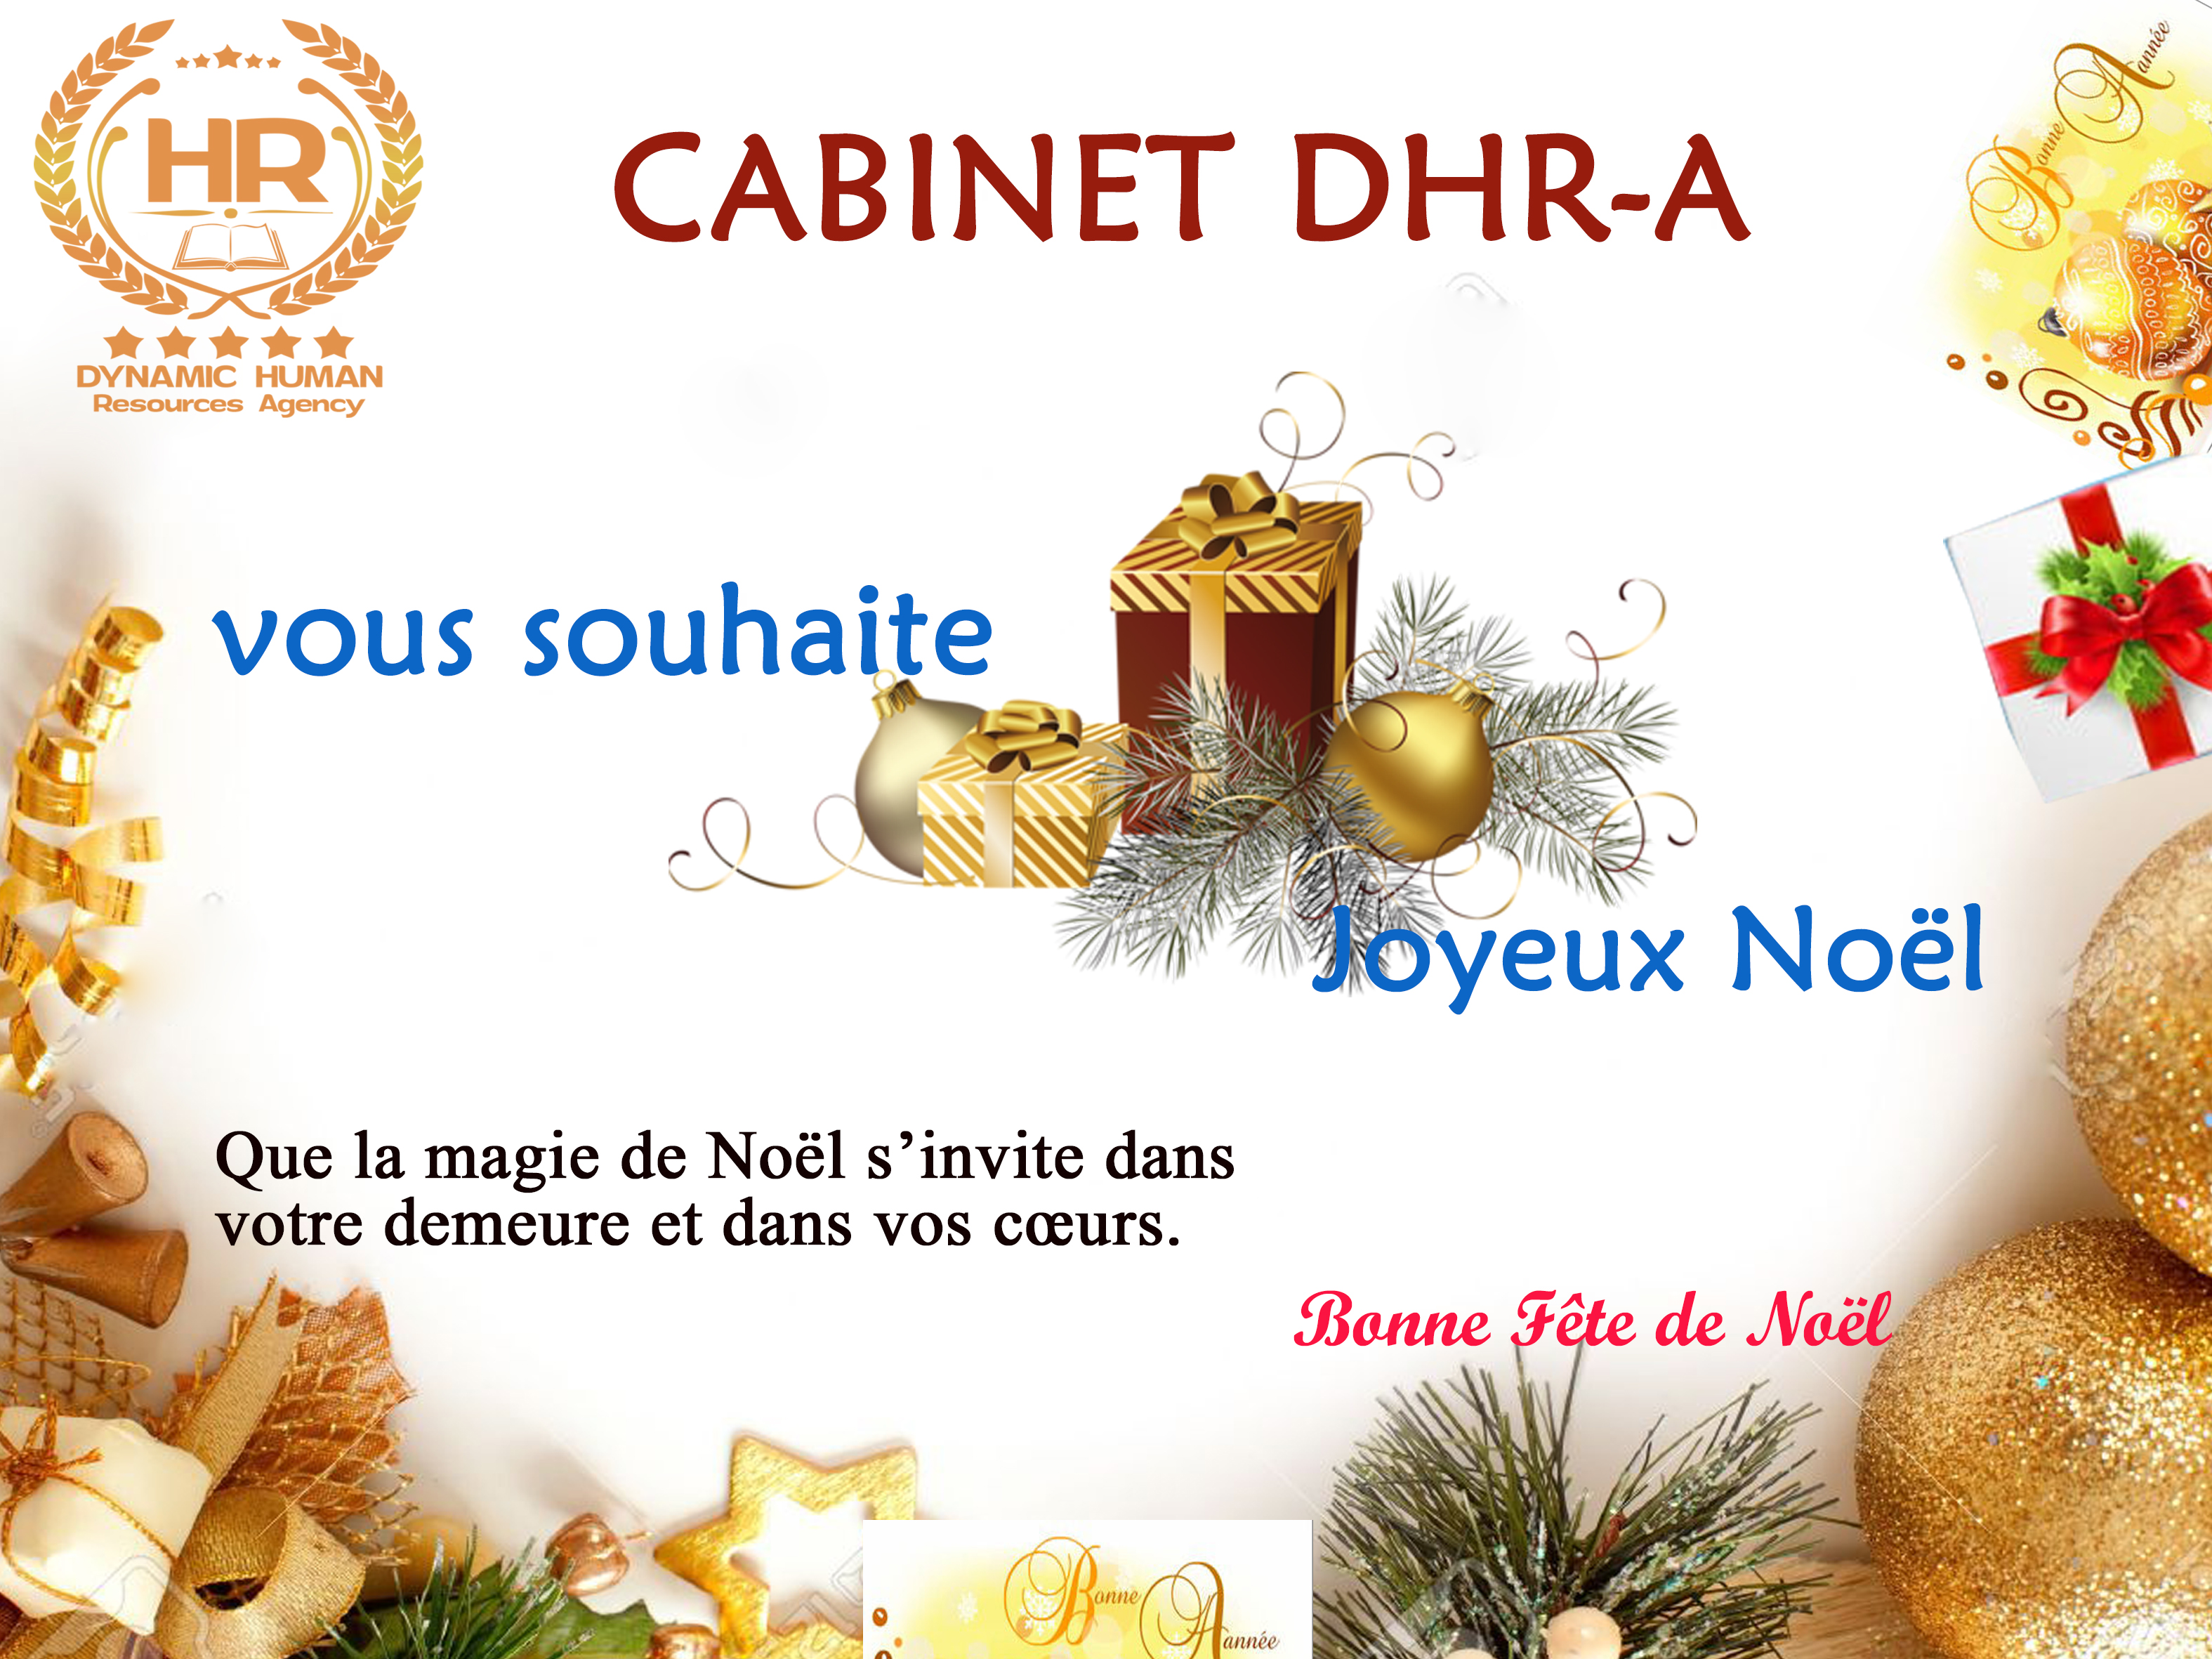 Le Cabinet DHR-A vous souhaite une bonne fête de Noël